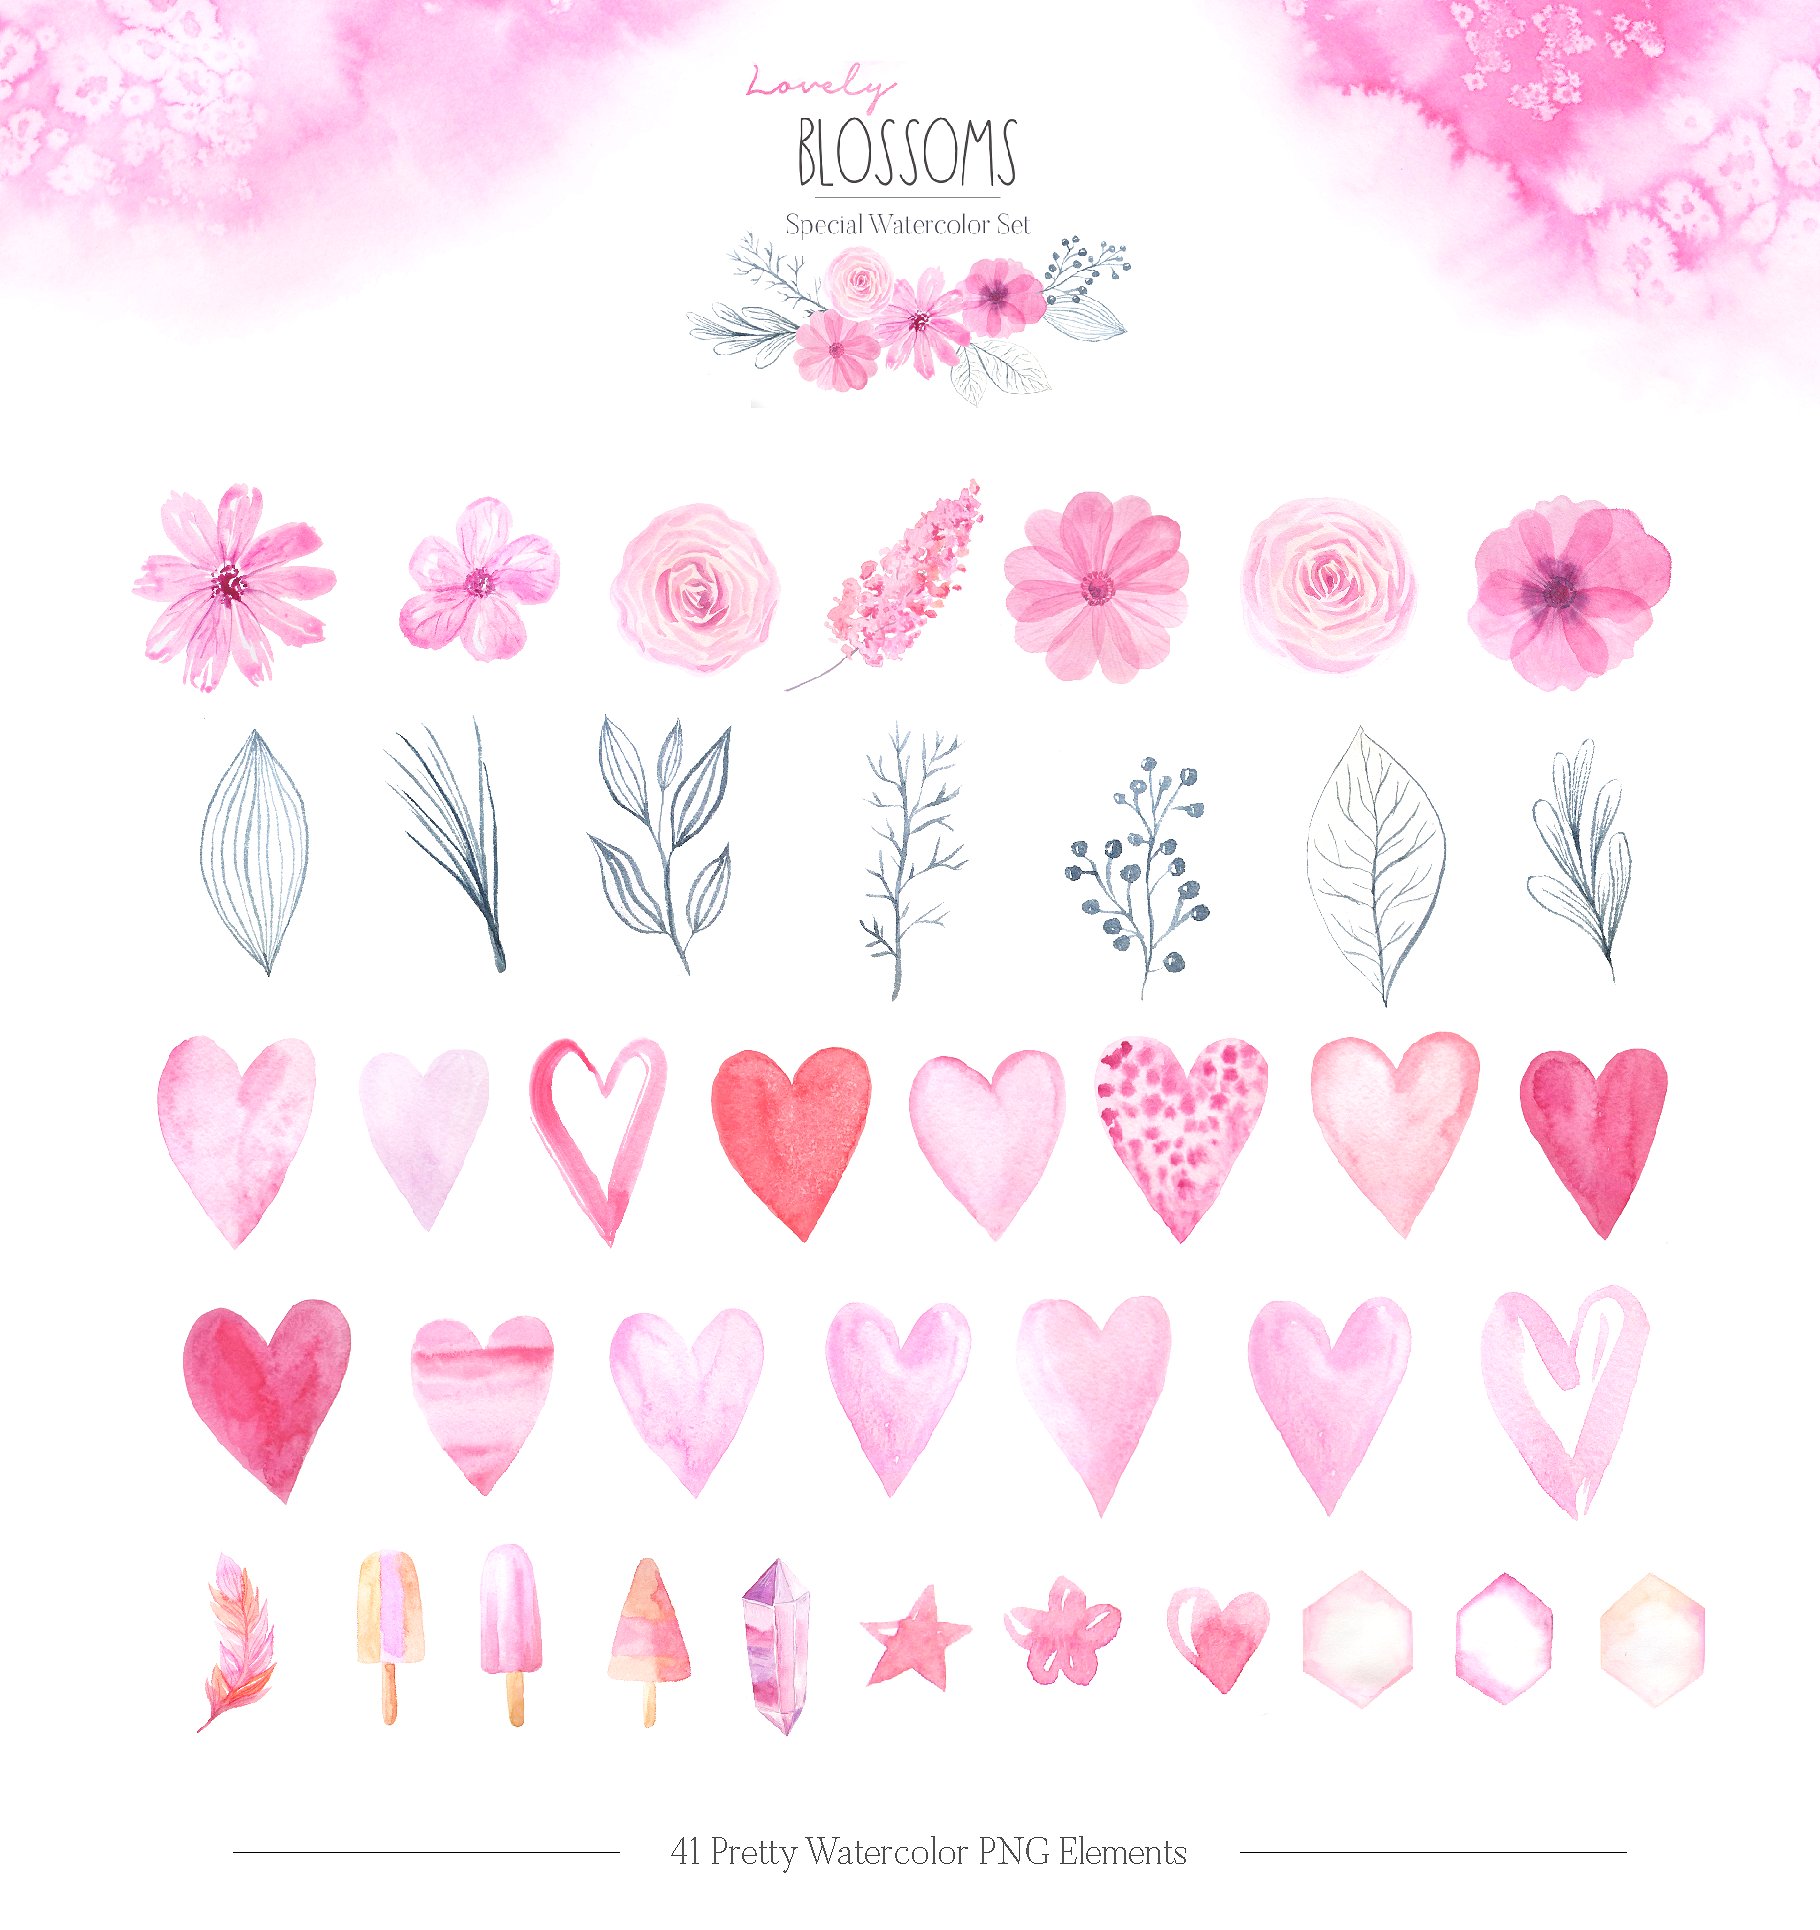 情人节可爱花朵水彩画素材套装下载[JPG,PNG]插图(1)